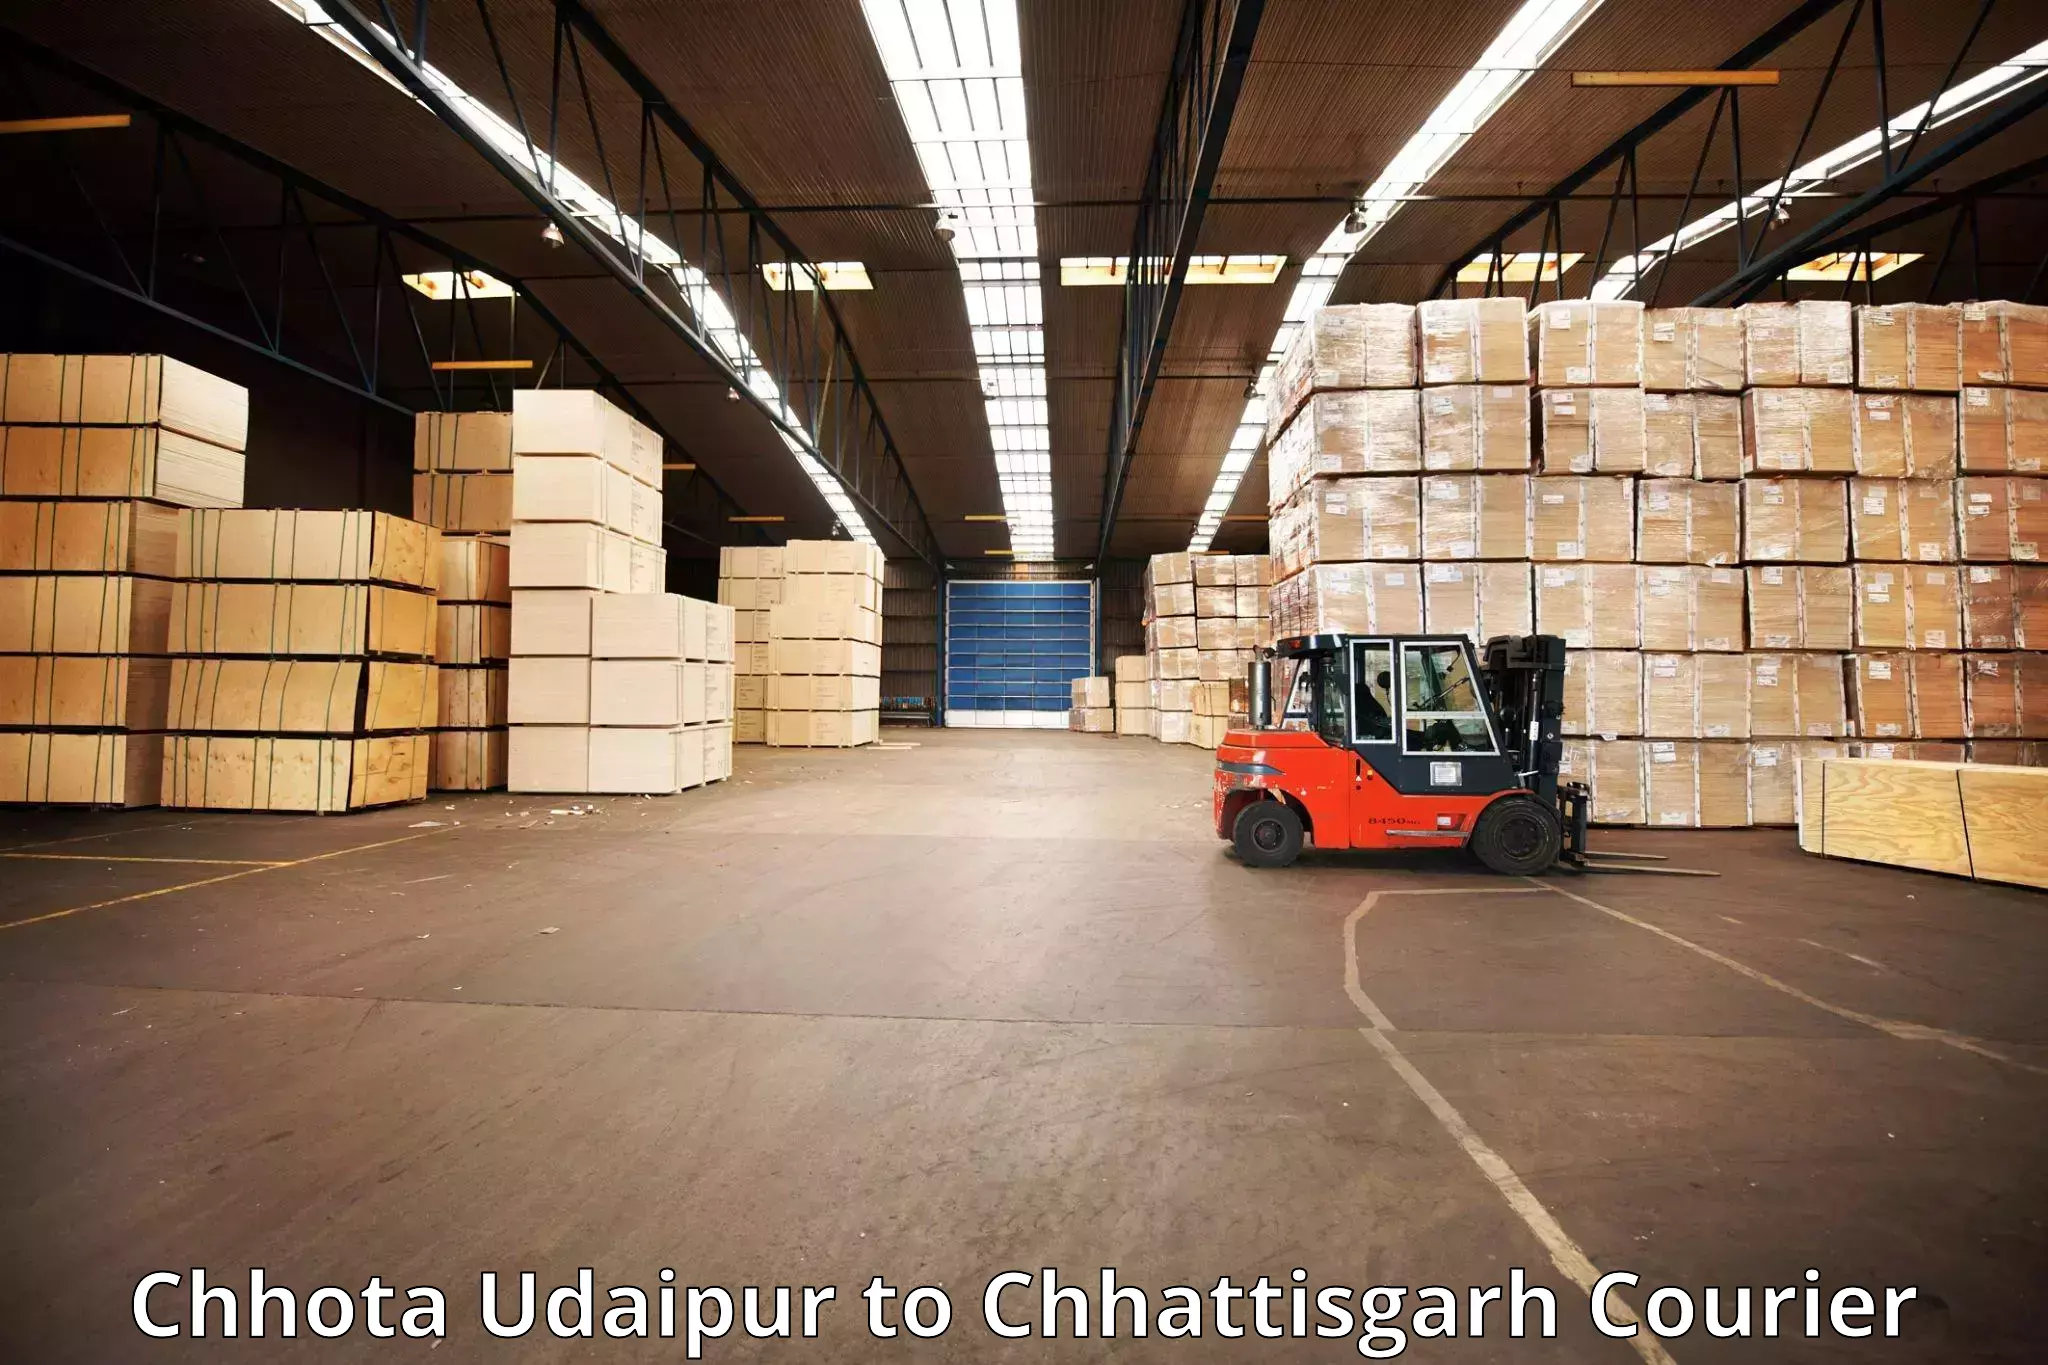 Luggage transport consultancy Chhota Udaipur to Baramkela